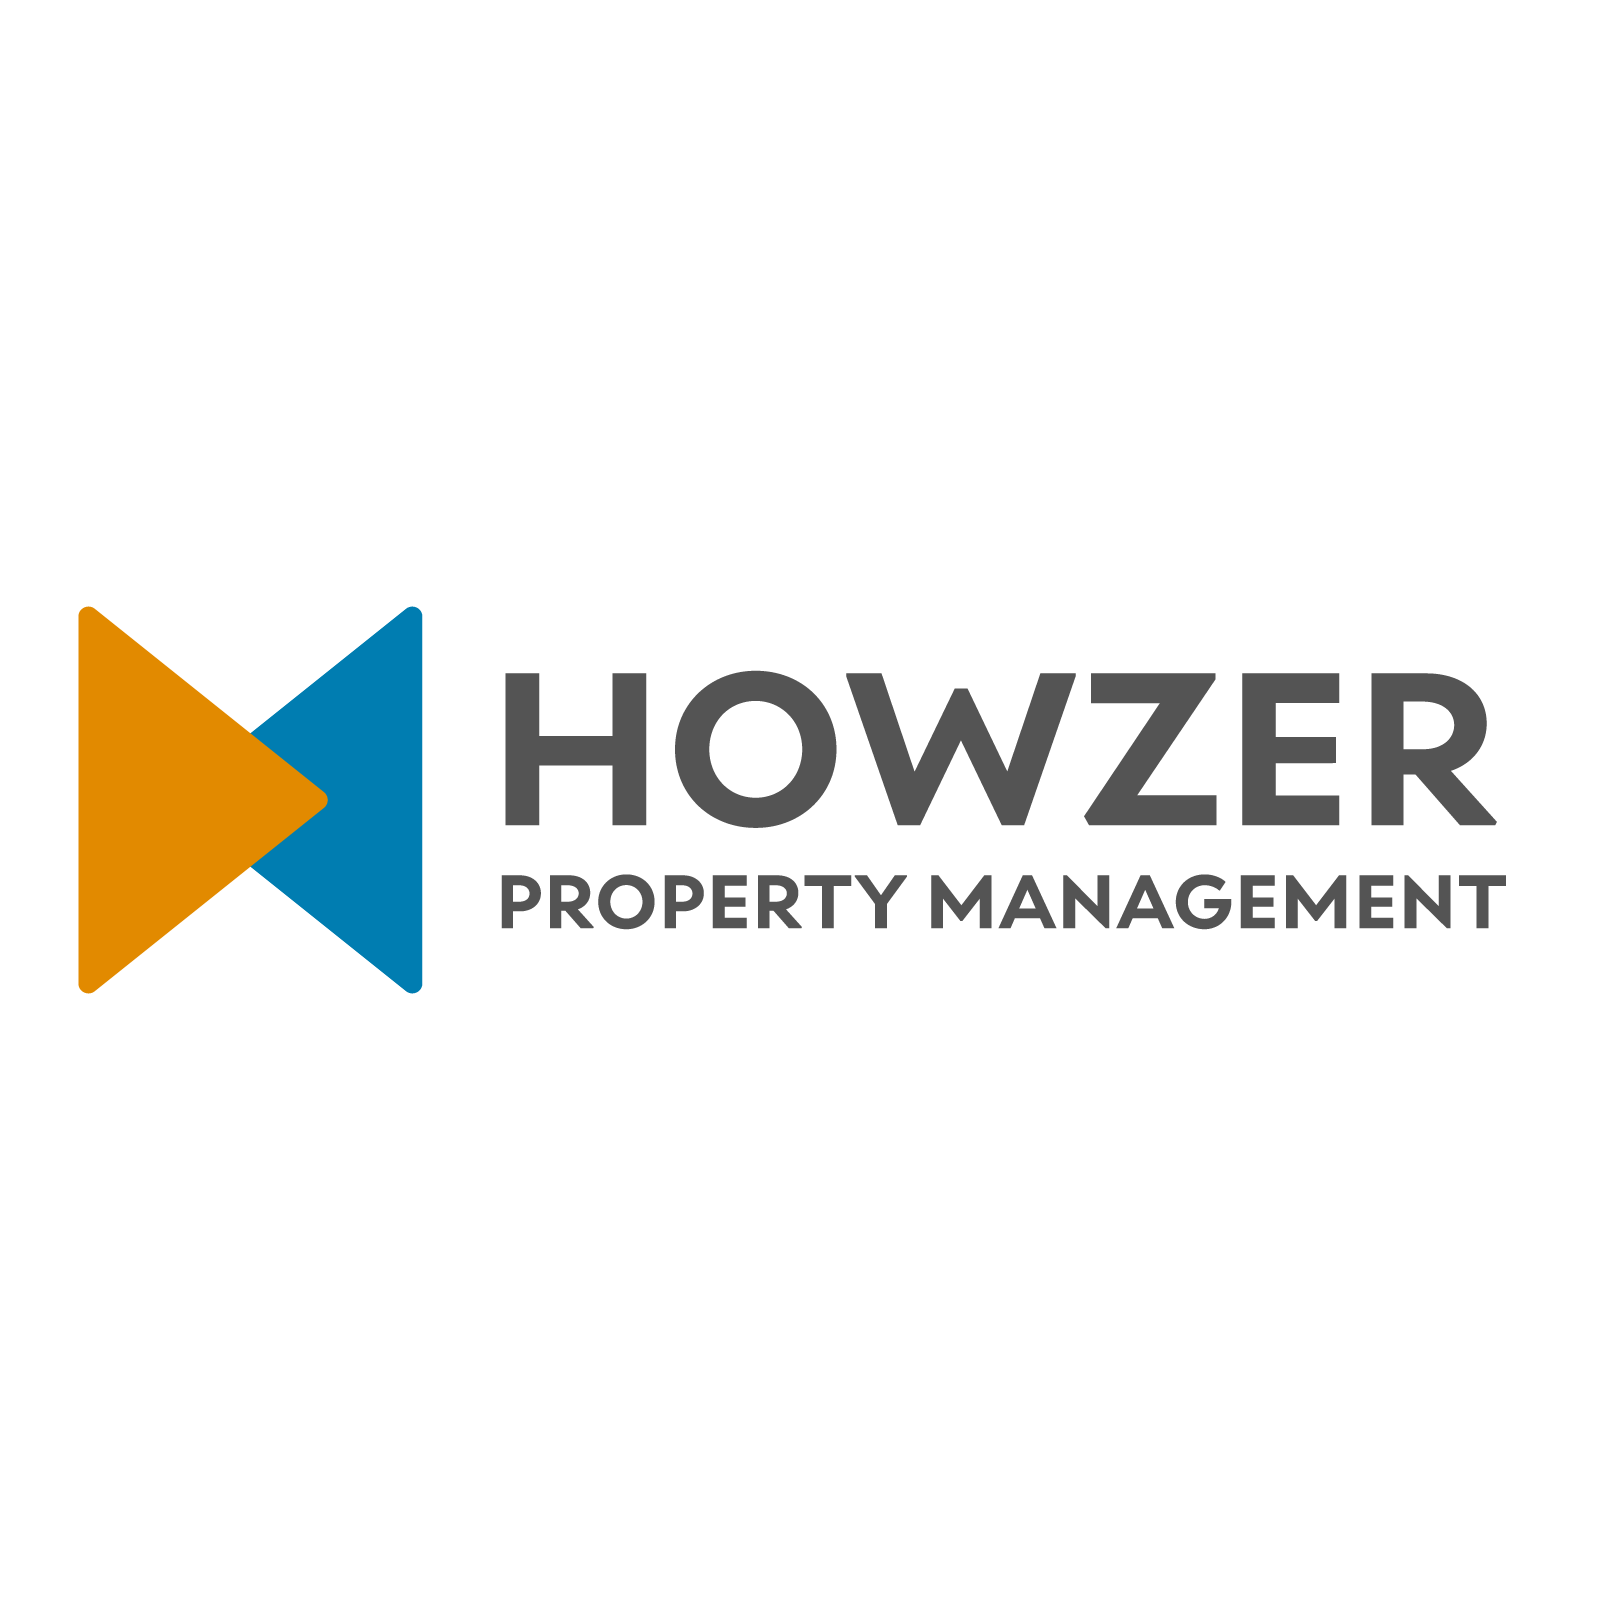 Howzer Property Management logo